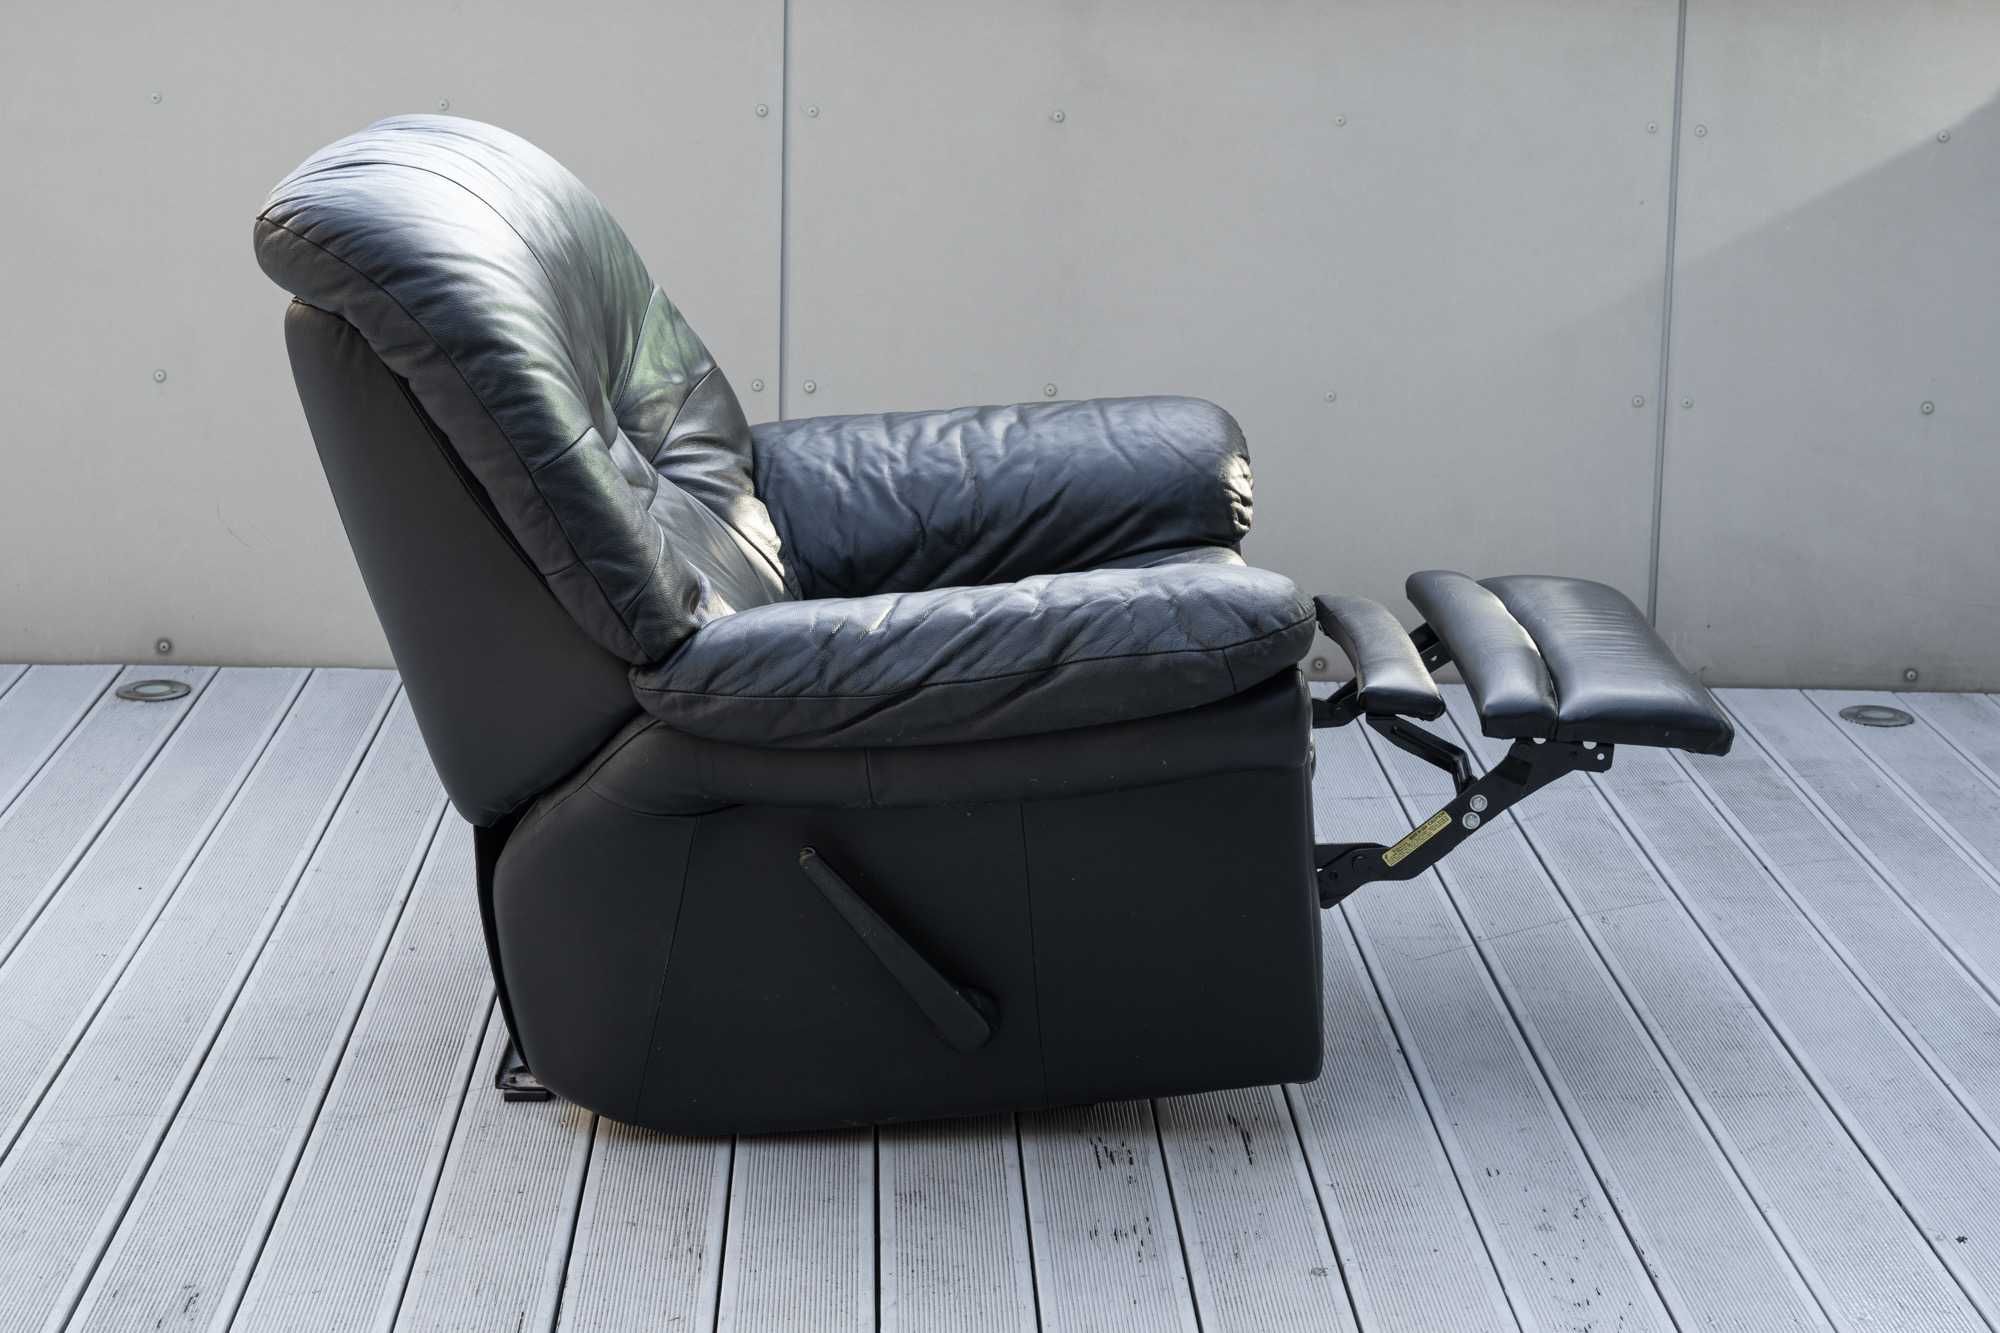 ZESTAW. 2 rozkładane fotele skórzane, czarne, wypoczynkowe z Australii